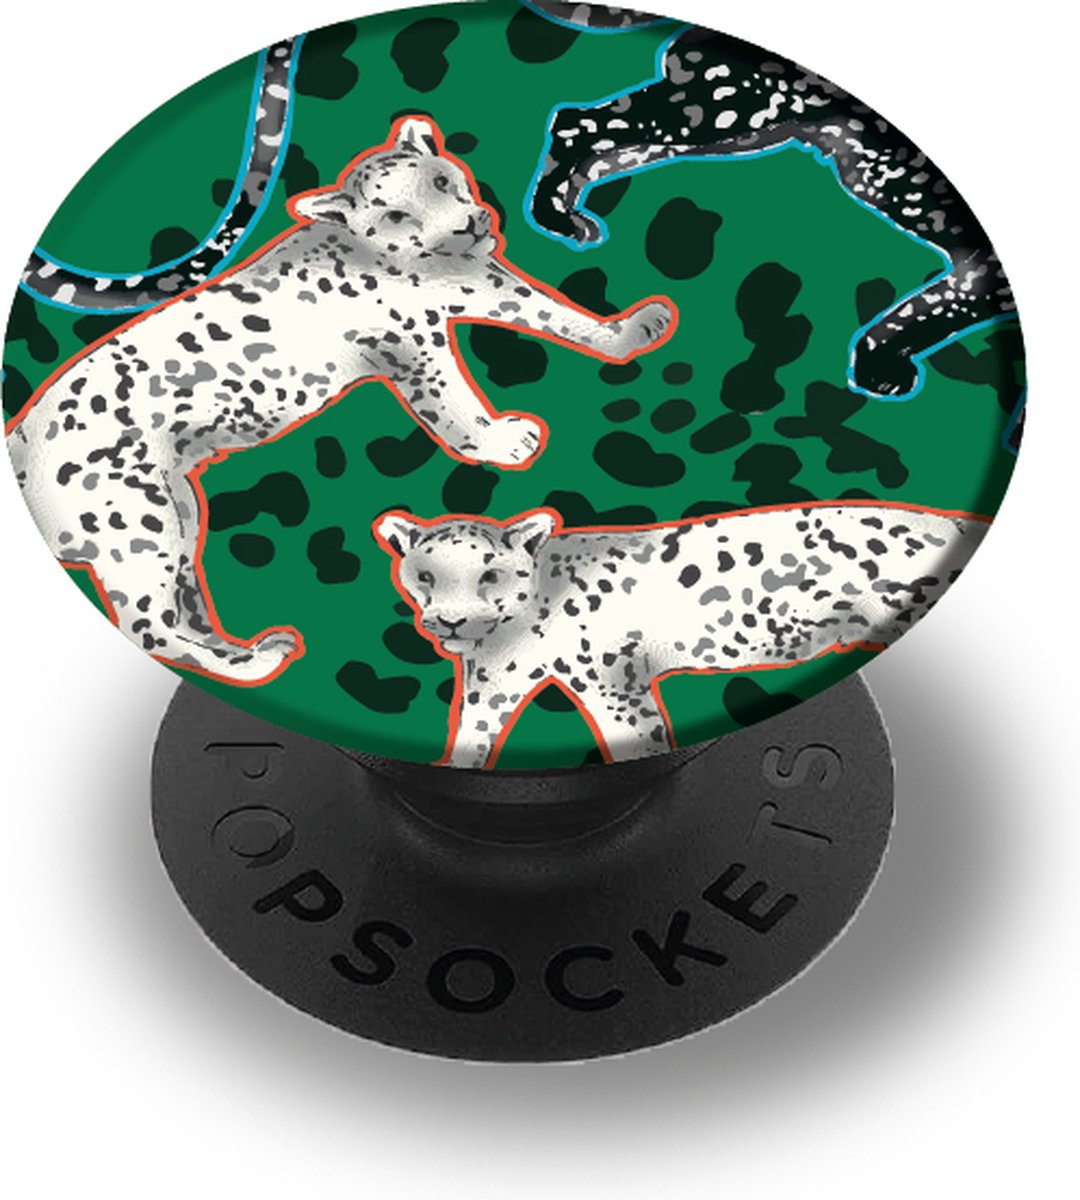 Richmond & Finch PopSockets Telefoon Grip - Green Leopard